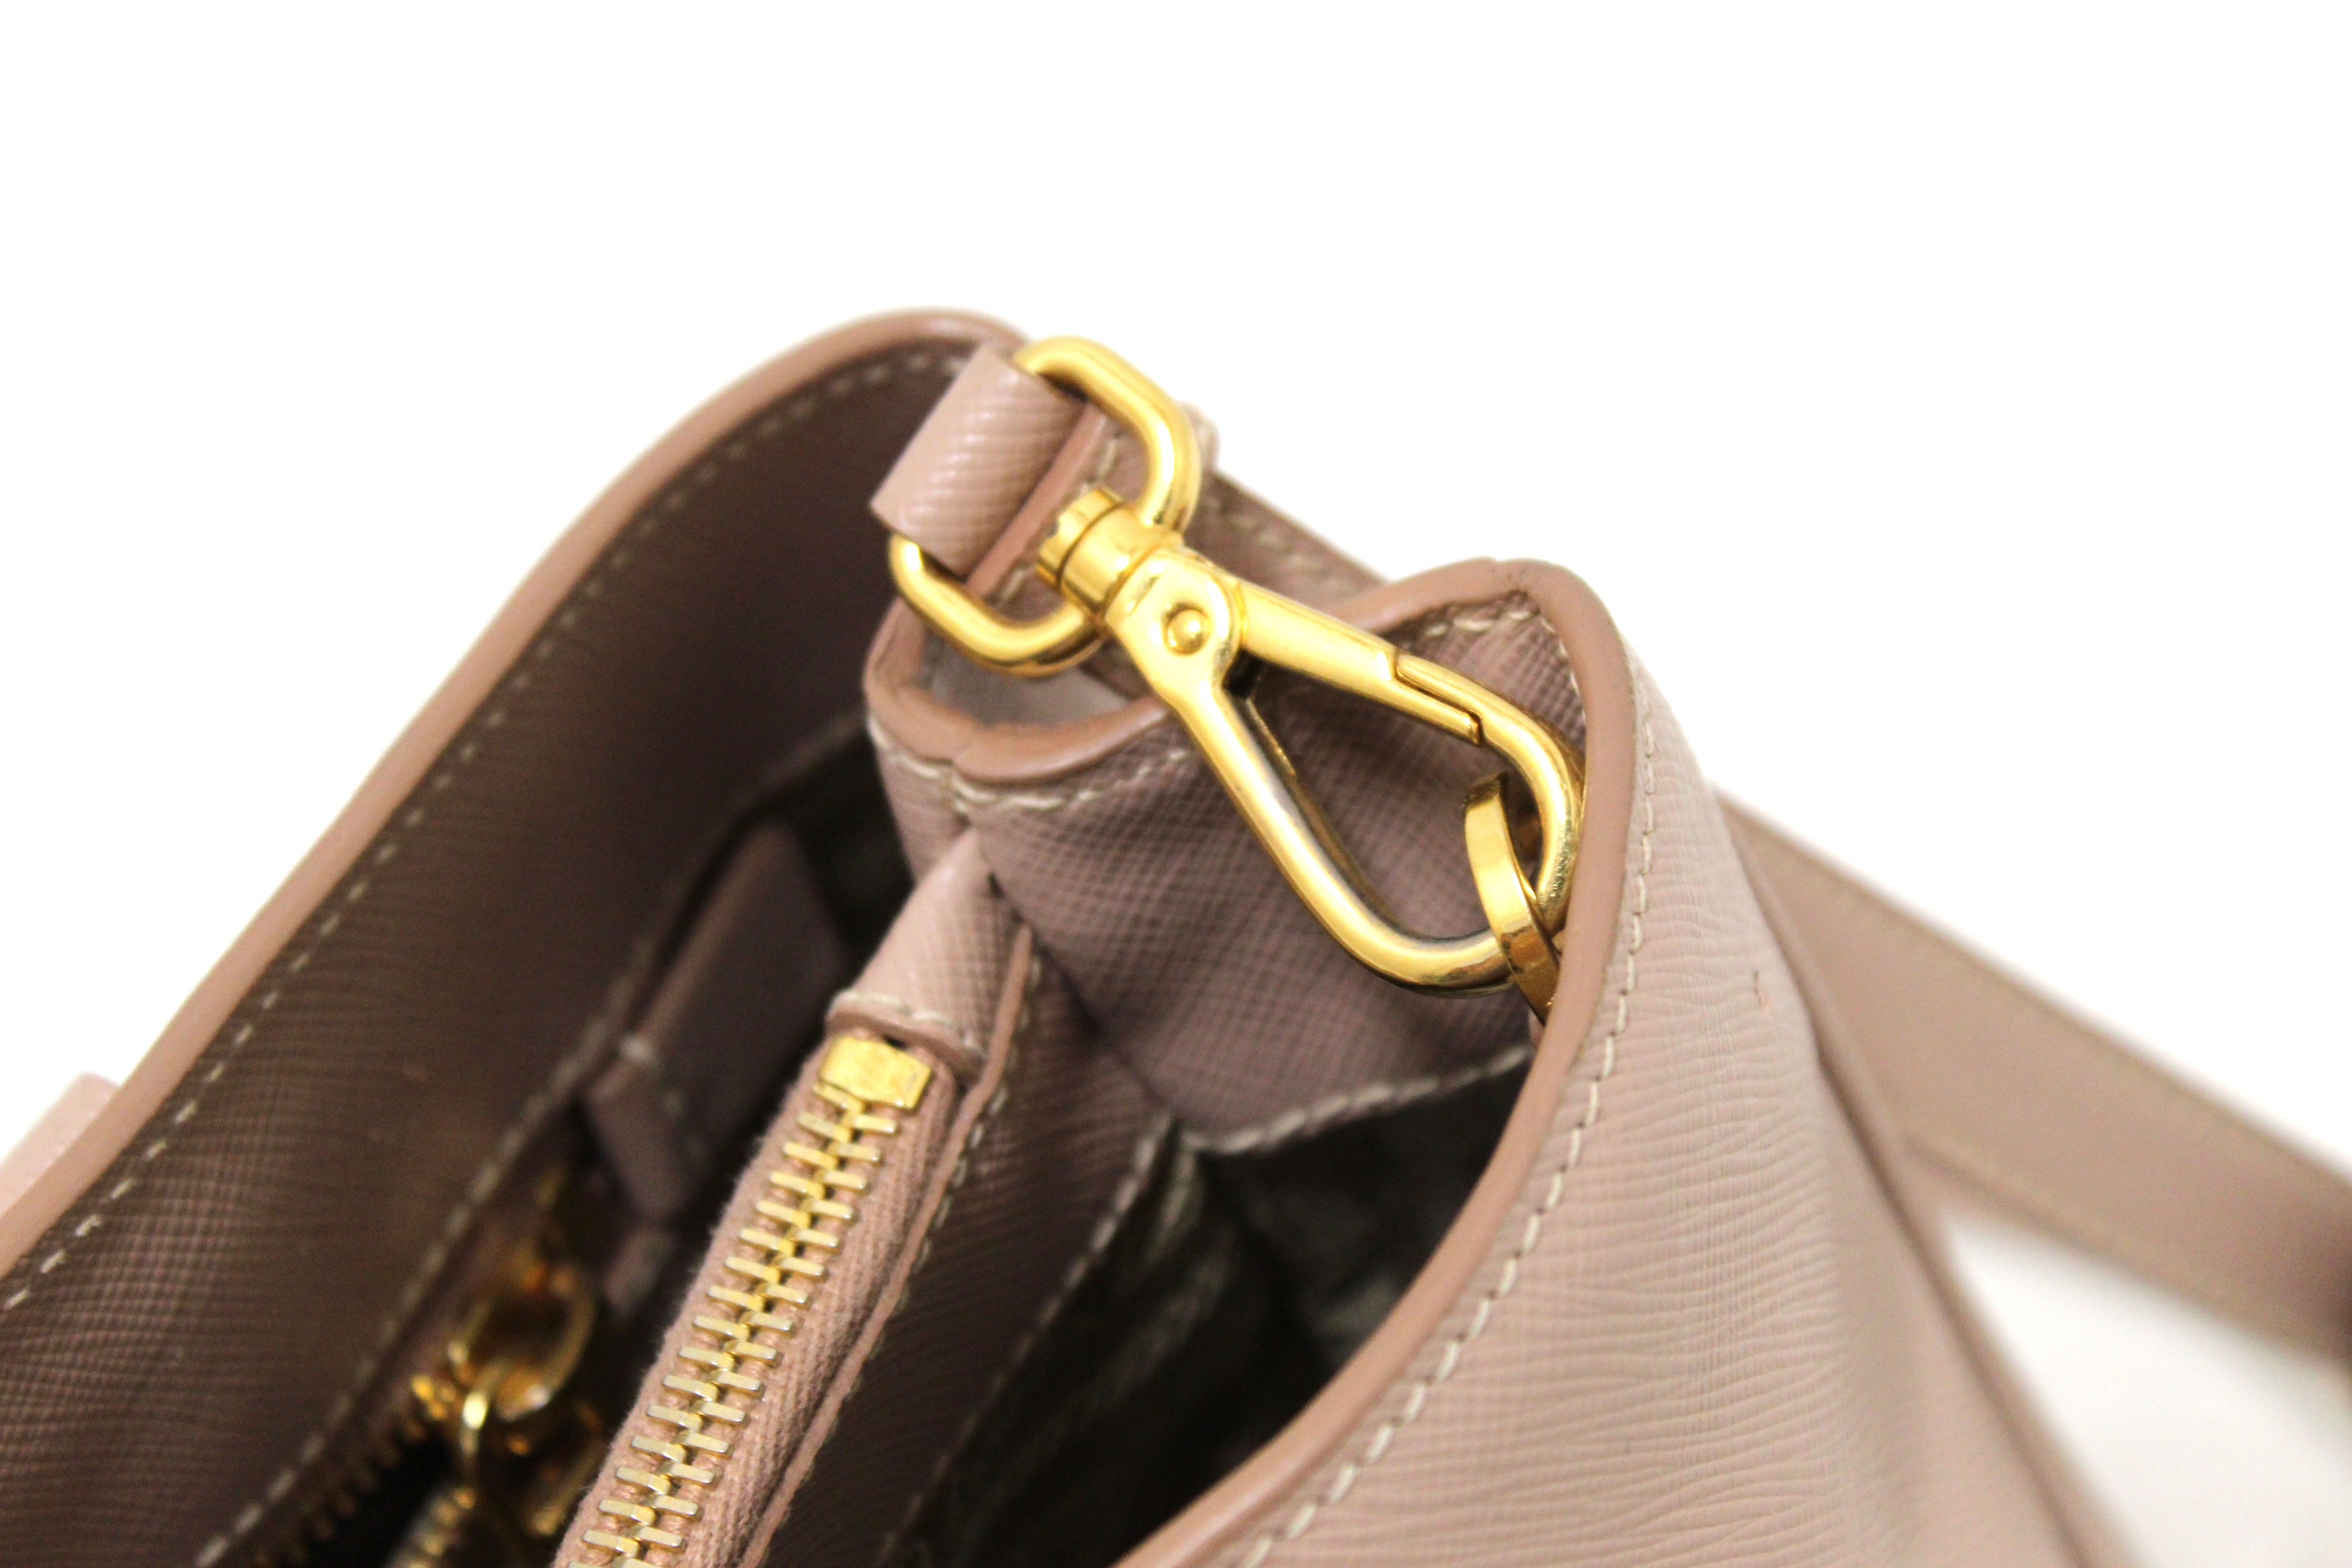 Tan Prada Extra Large Saffiano Lux Galleria Double Zip Tote Handbag